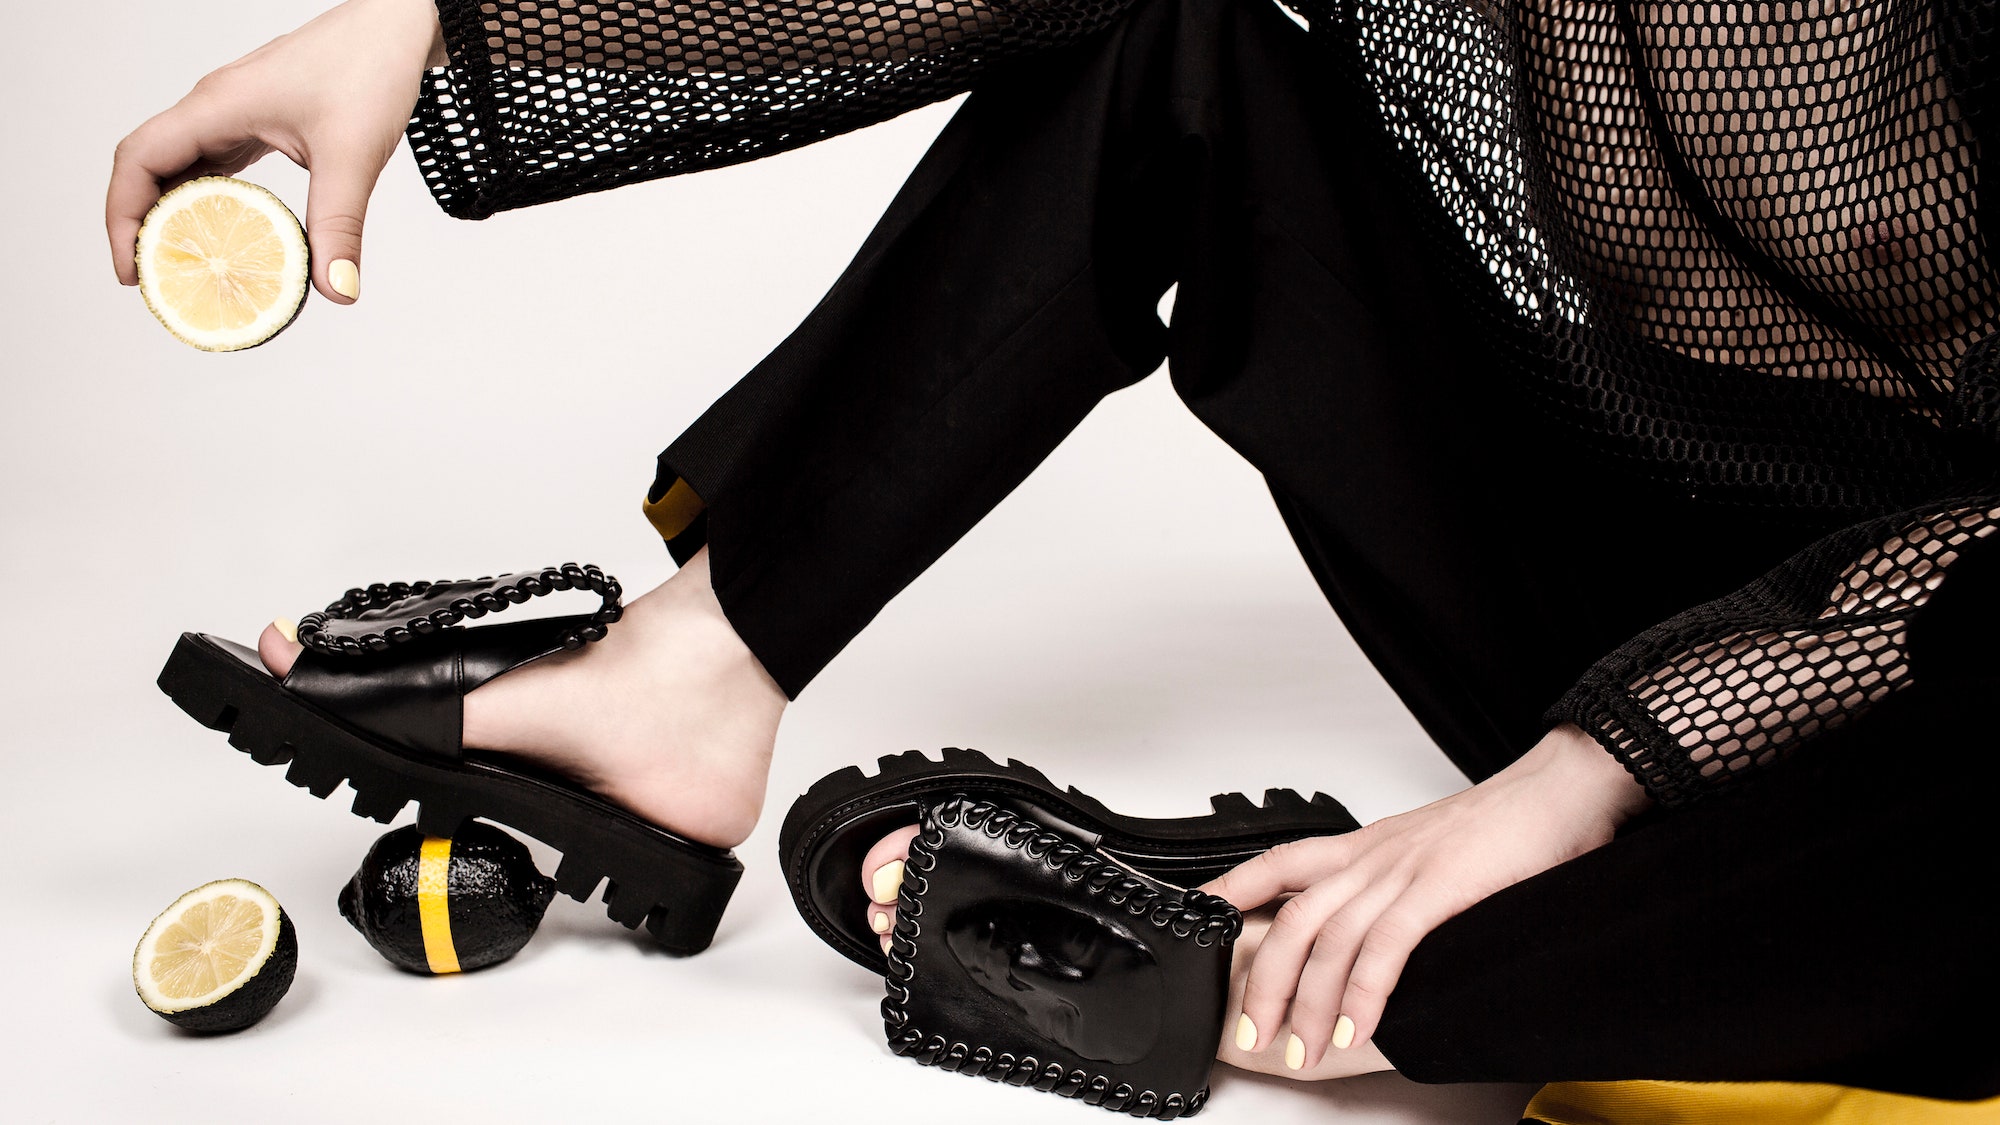 Коллекция обуви Ganor Dominic весналето 2017 вдохновленная мифами о Калипсо и Электре | Glamour